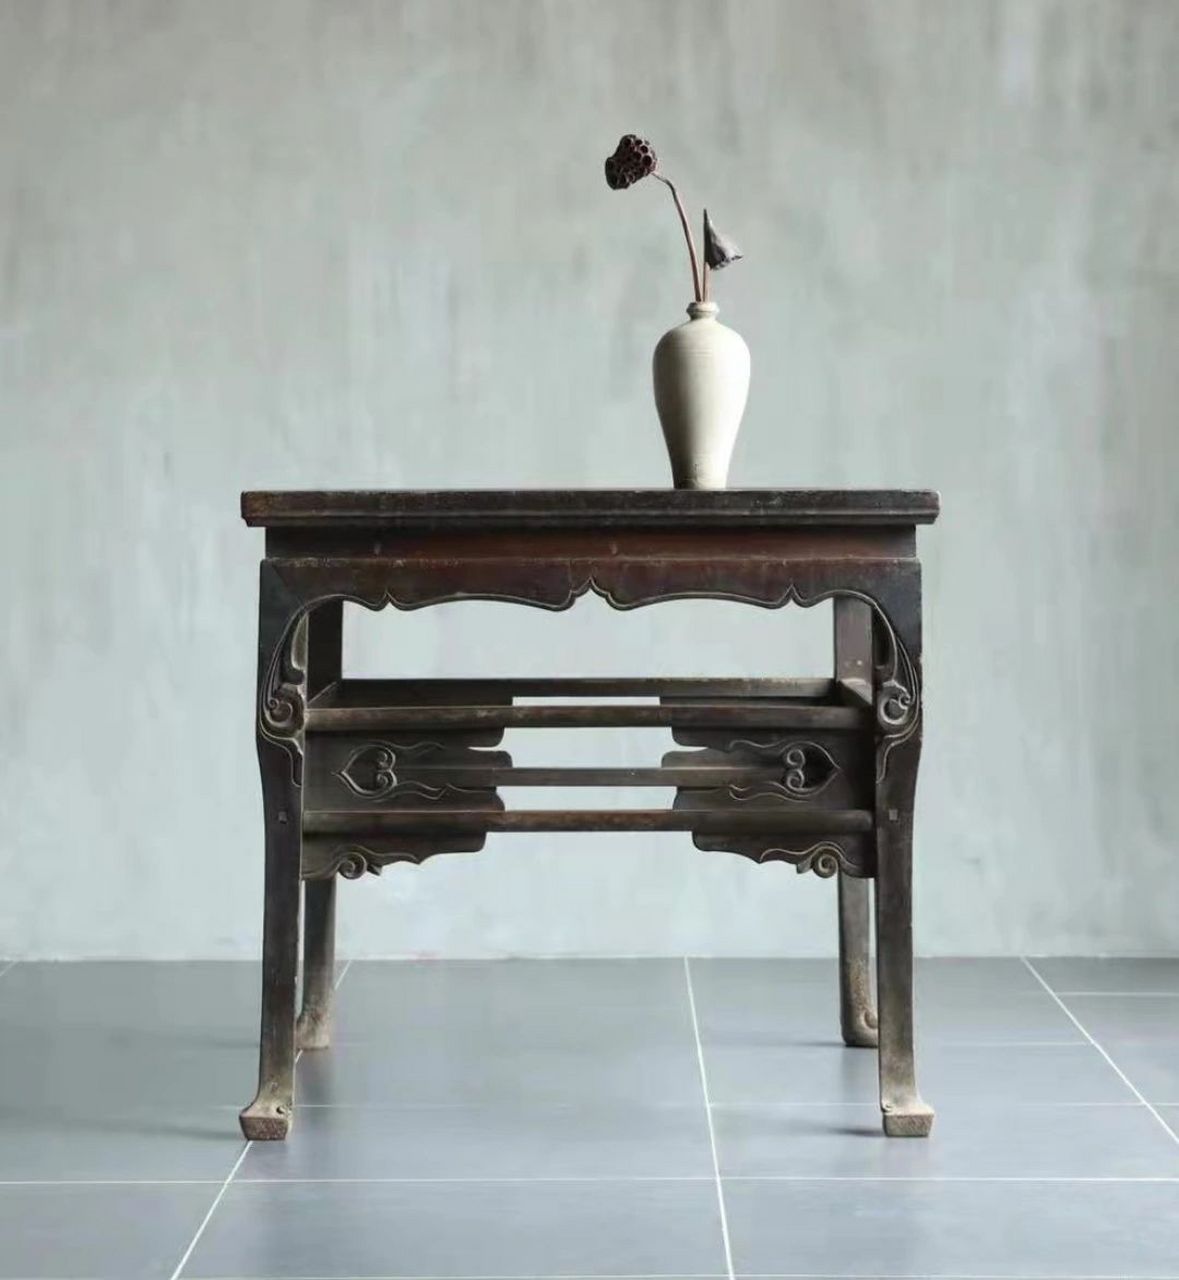 供桌:古代祭祀时的专用家具 桌类家具种类繁多,按形制来分,有方桌,长